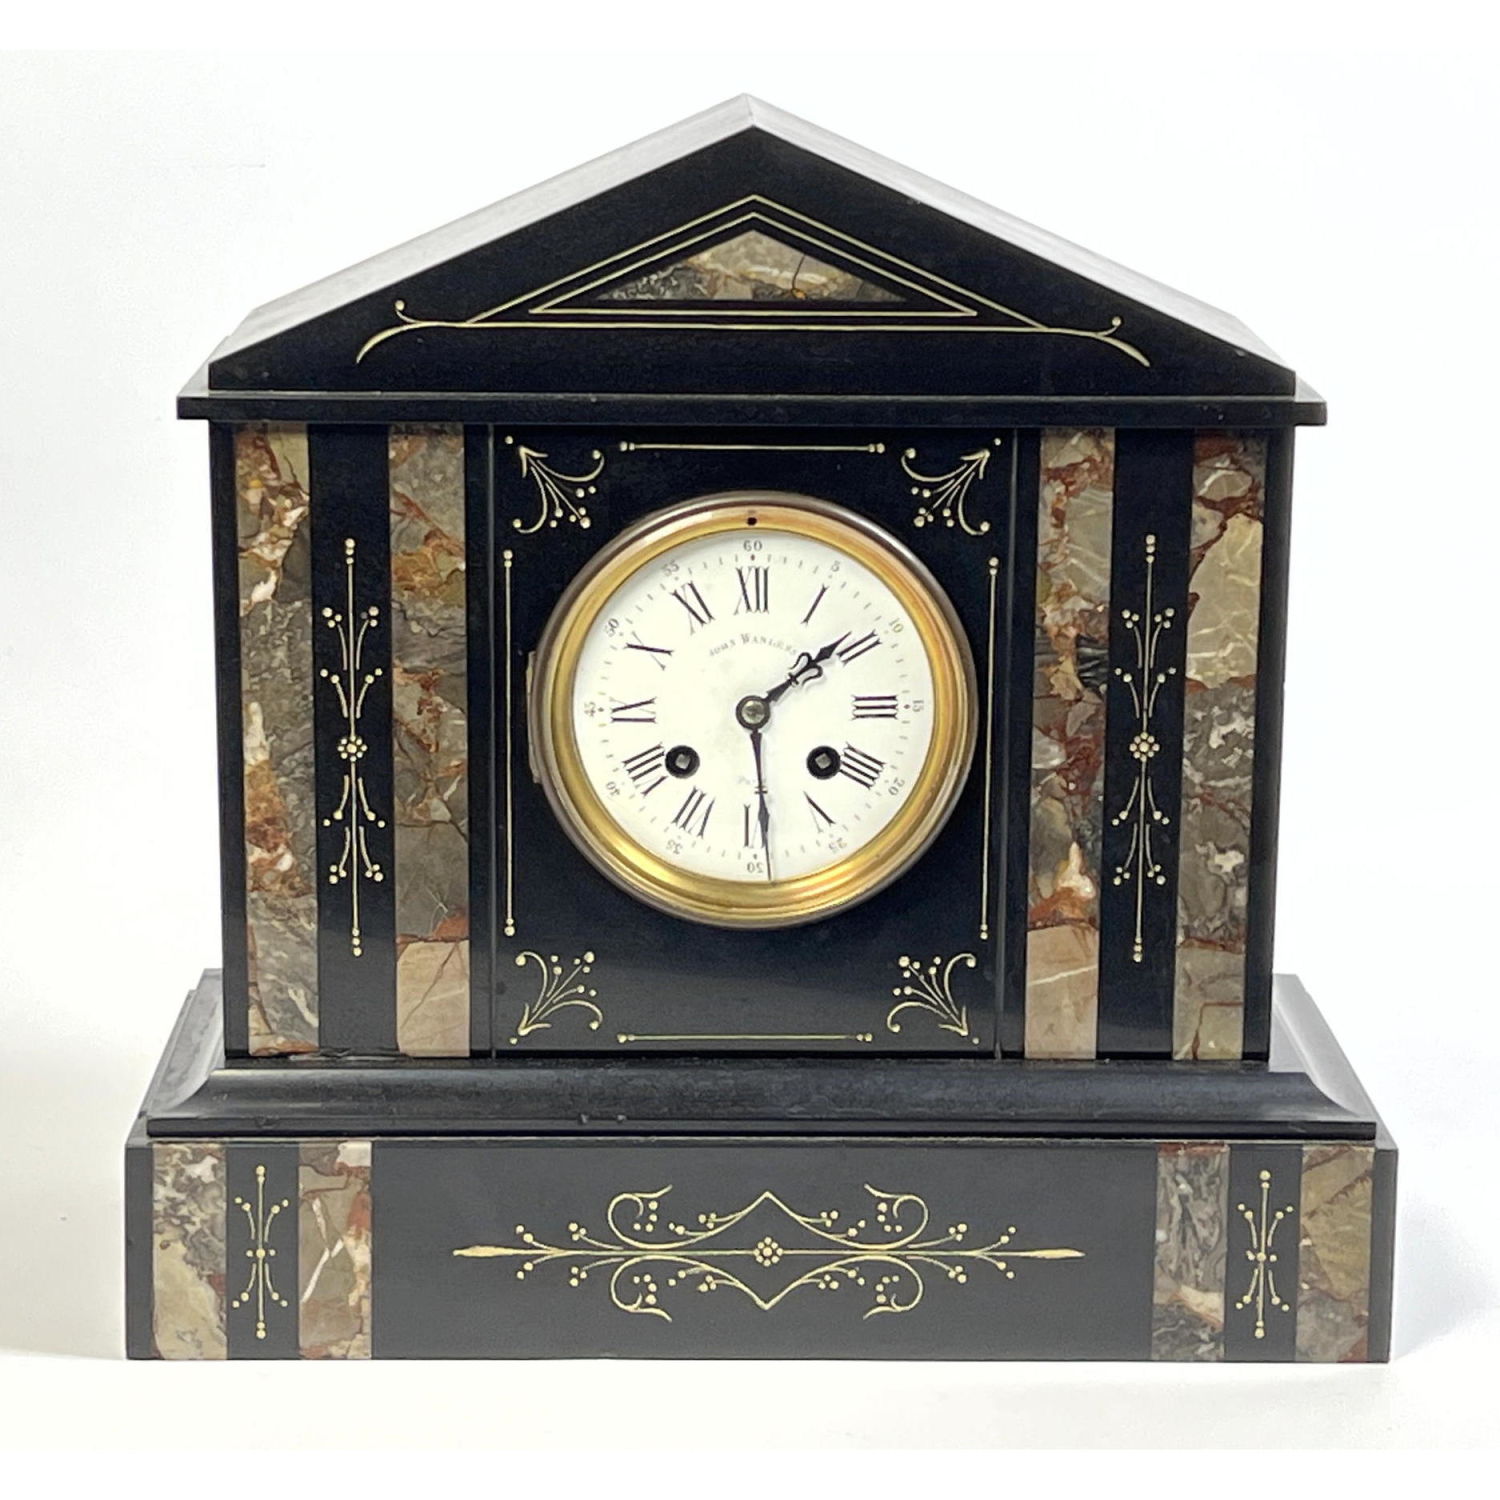 JOHN WANLESS Paris Antique Mantle Clock.